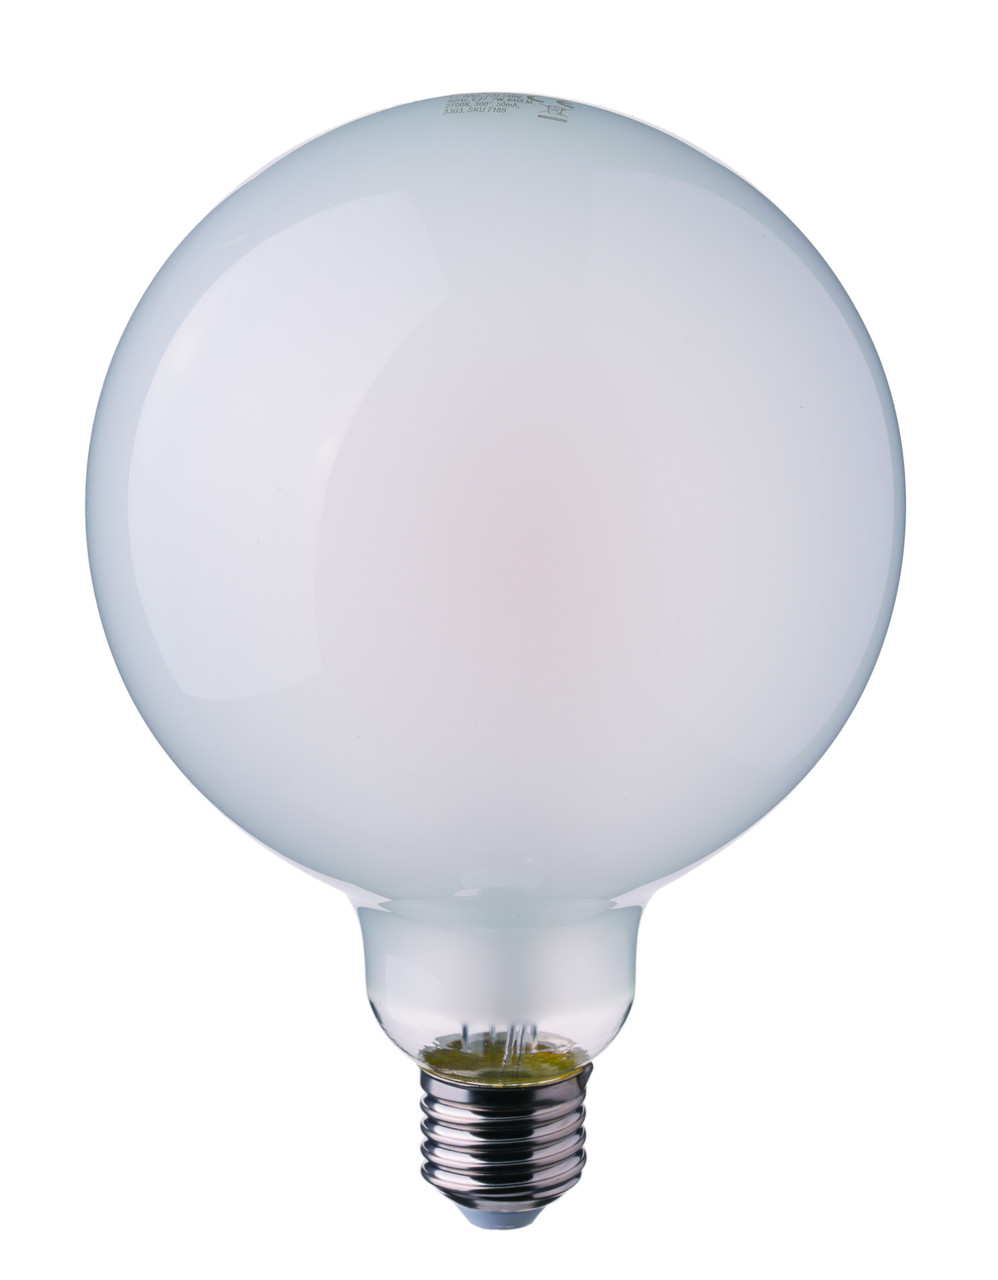 Филаментная лампа V-Tac 7 Вт, 840lm, G95, матовое стекло, Е27, 6400К